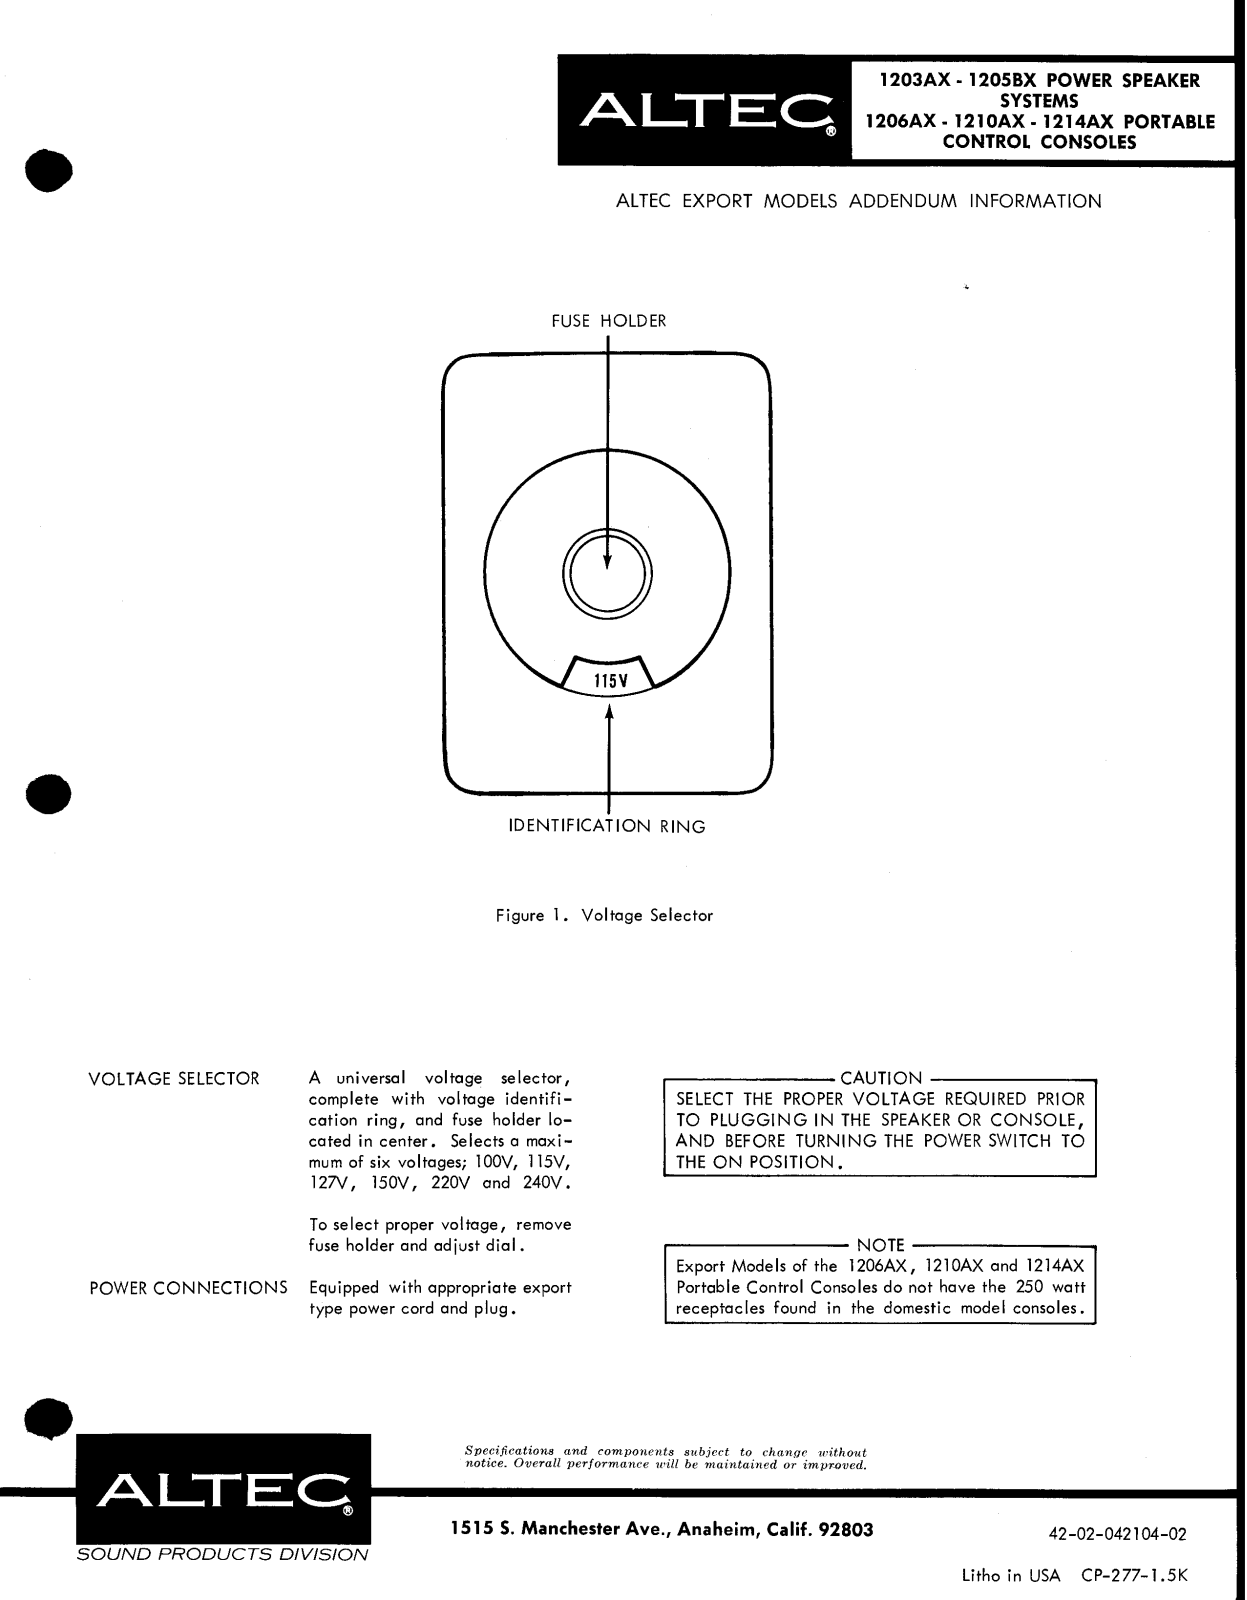 Altec lansing 1205BX, 1203AX User Manual